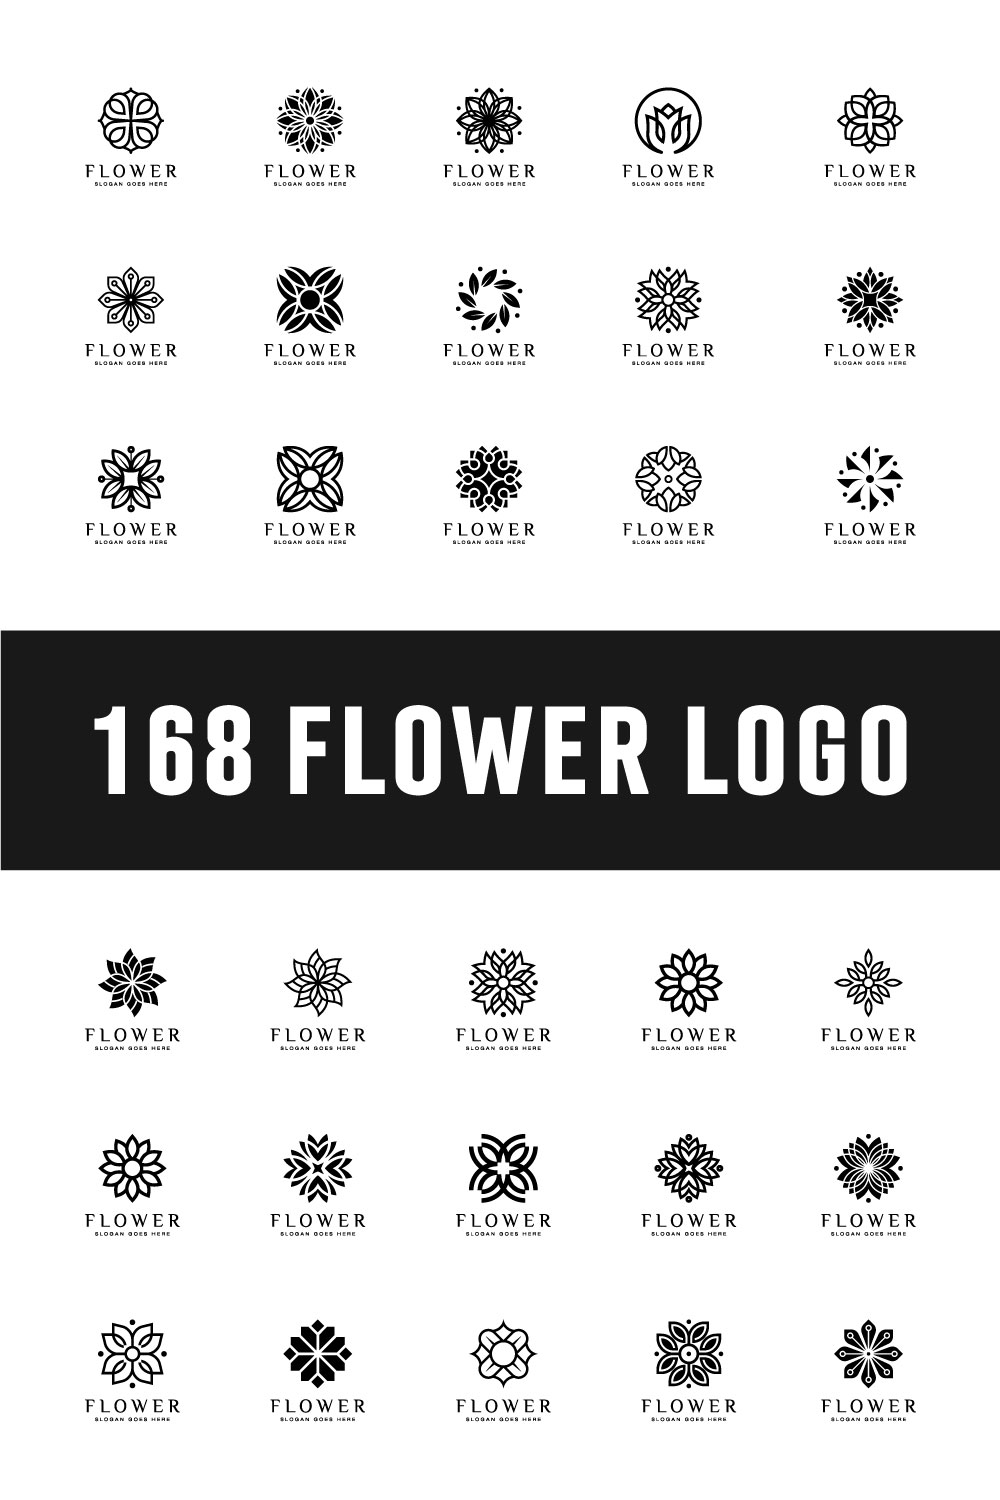 Set of Flower Logo Vector Design pinterest image.